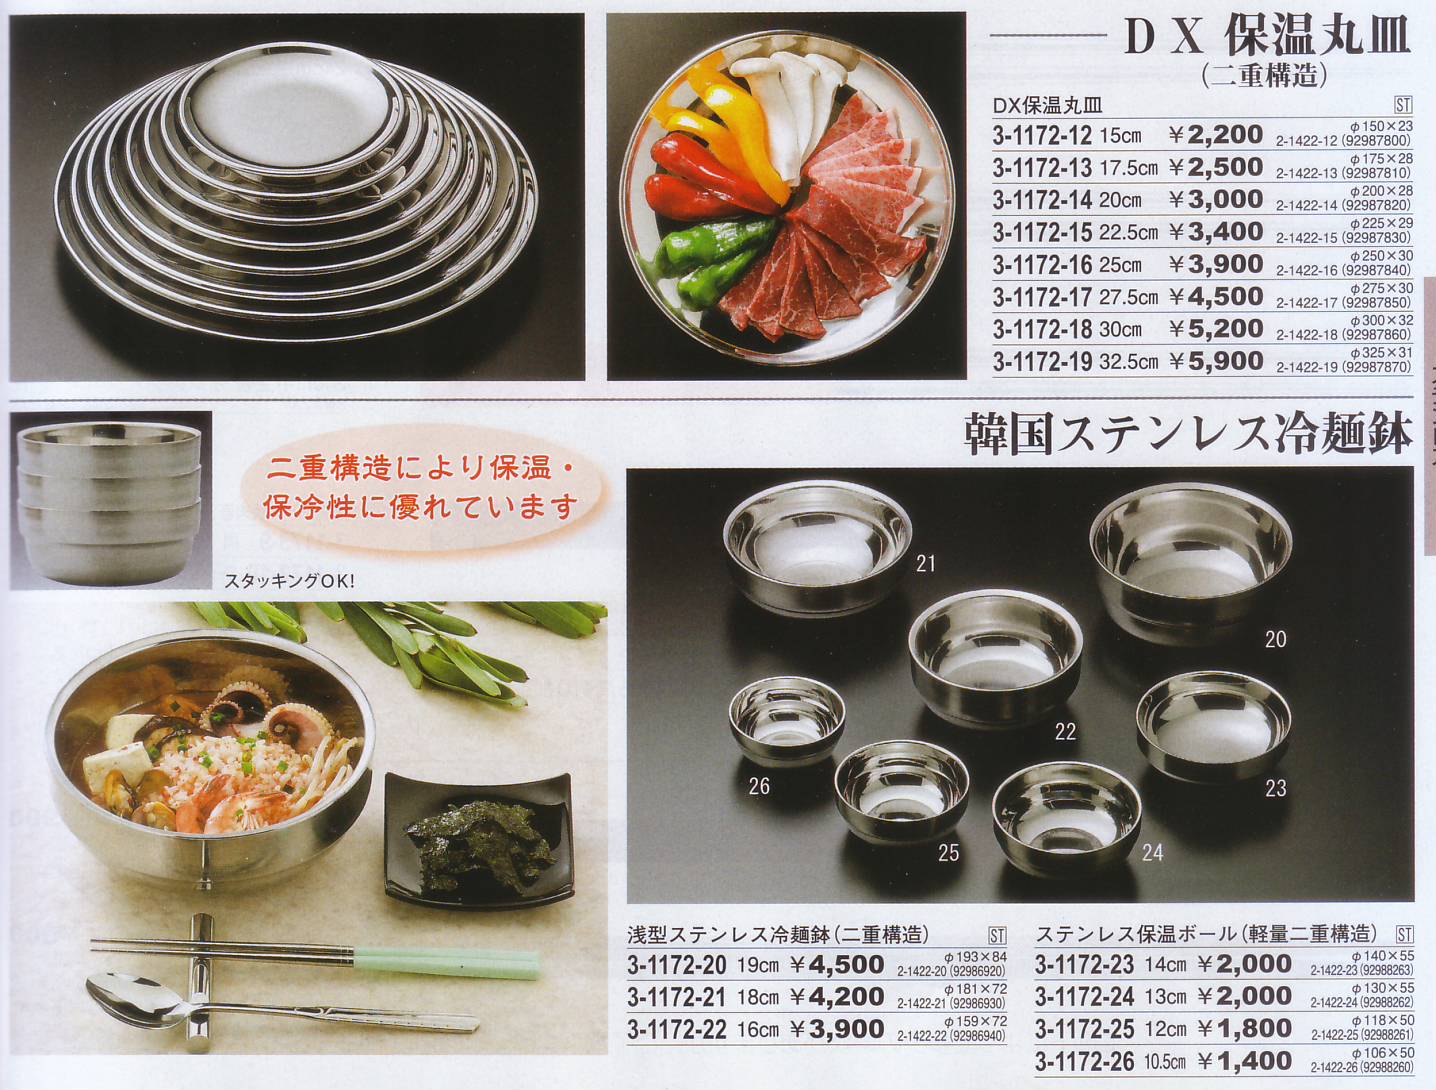 中空ステンレス保温飯器 小皿 冷麺鉢 ステンレス丸皿 DX保温丸皿 浅型 